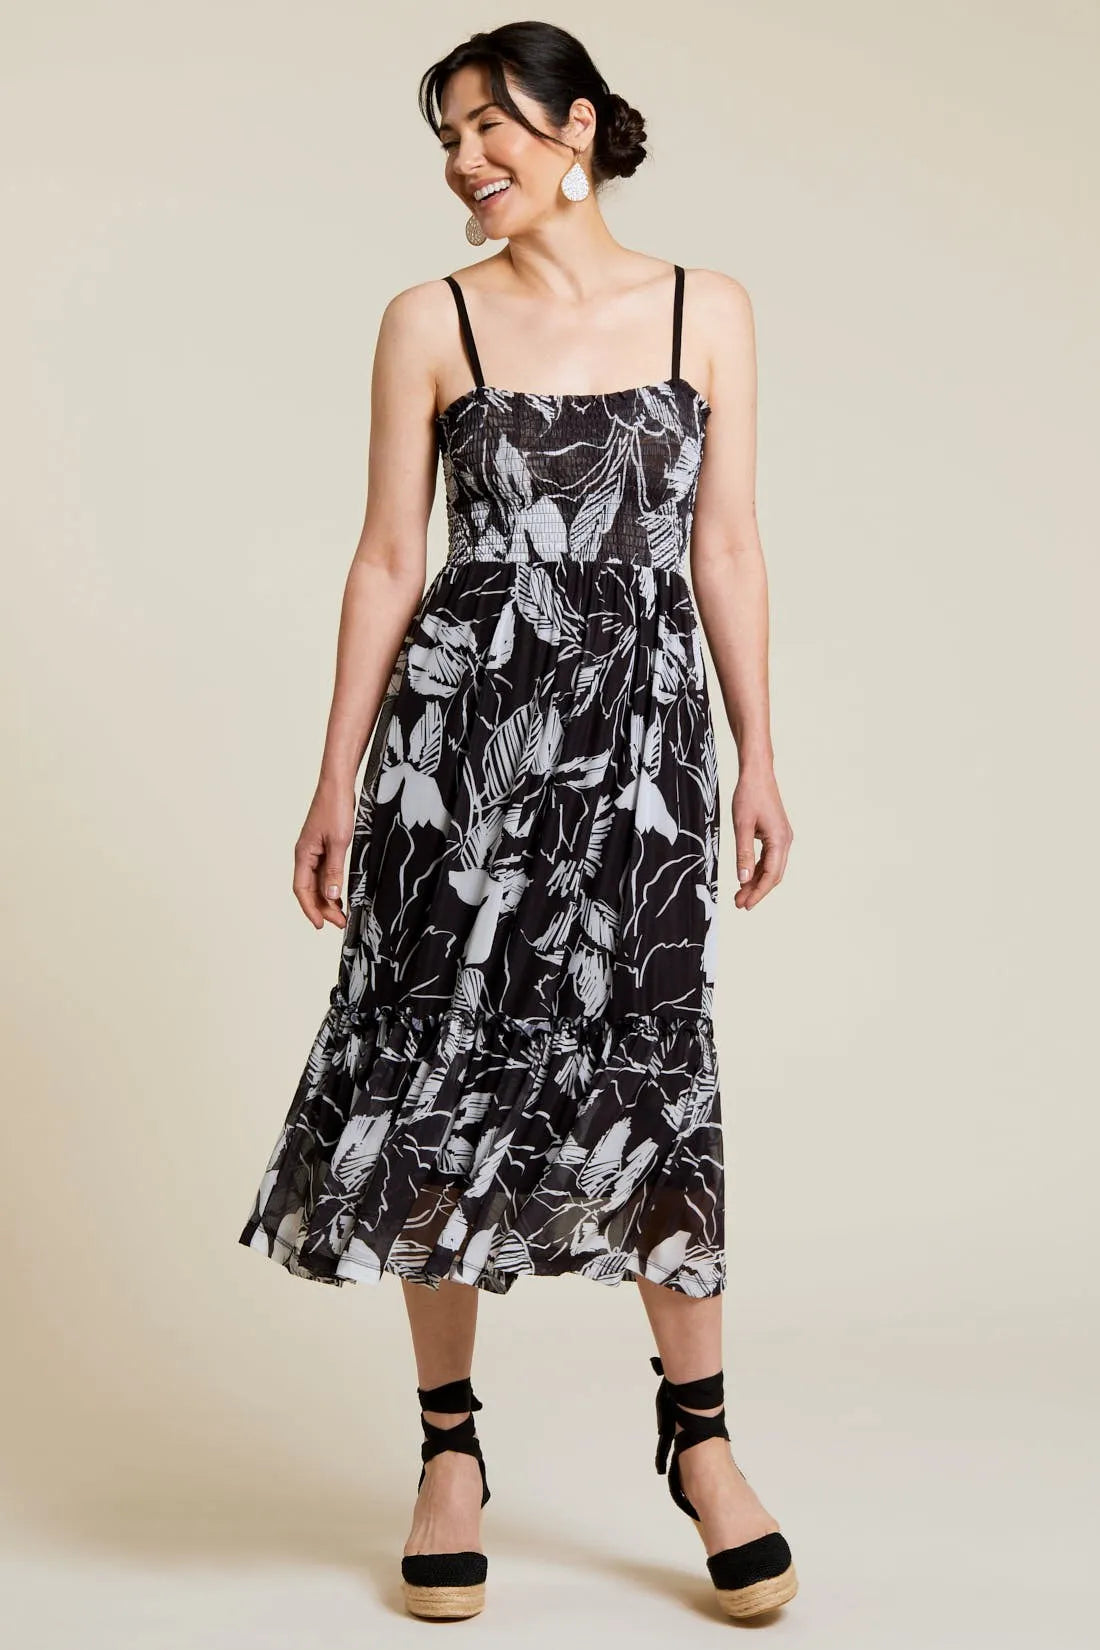 TRIBAL Convertible Dress/Skirt